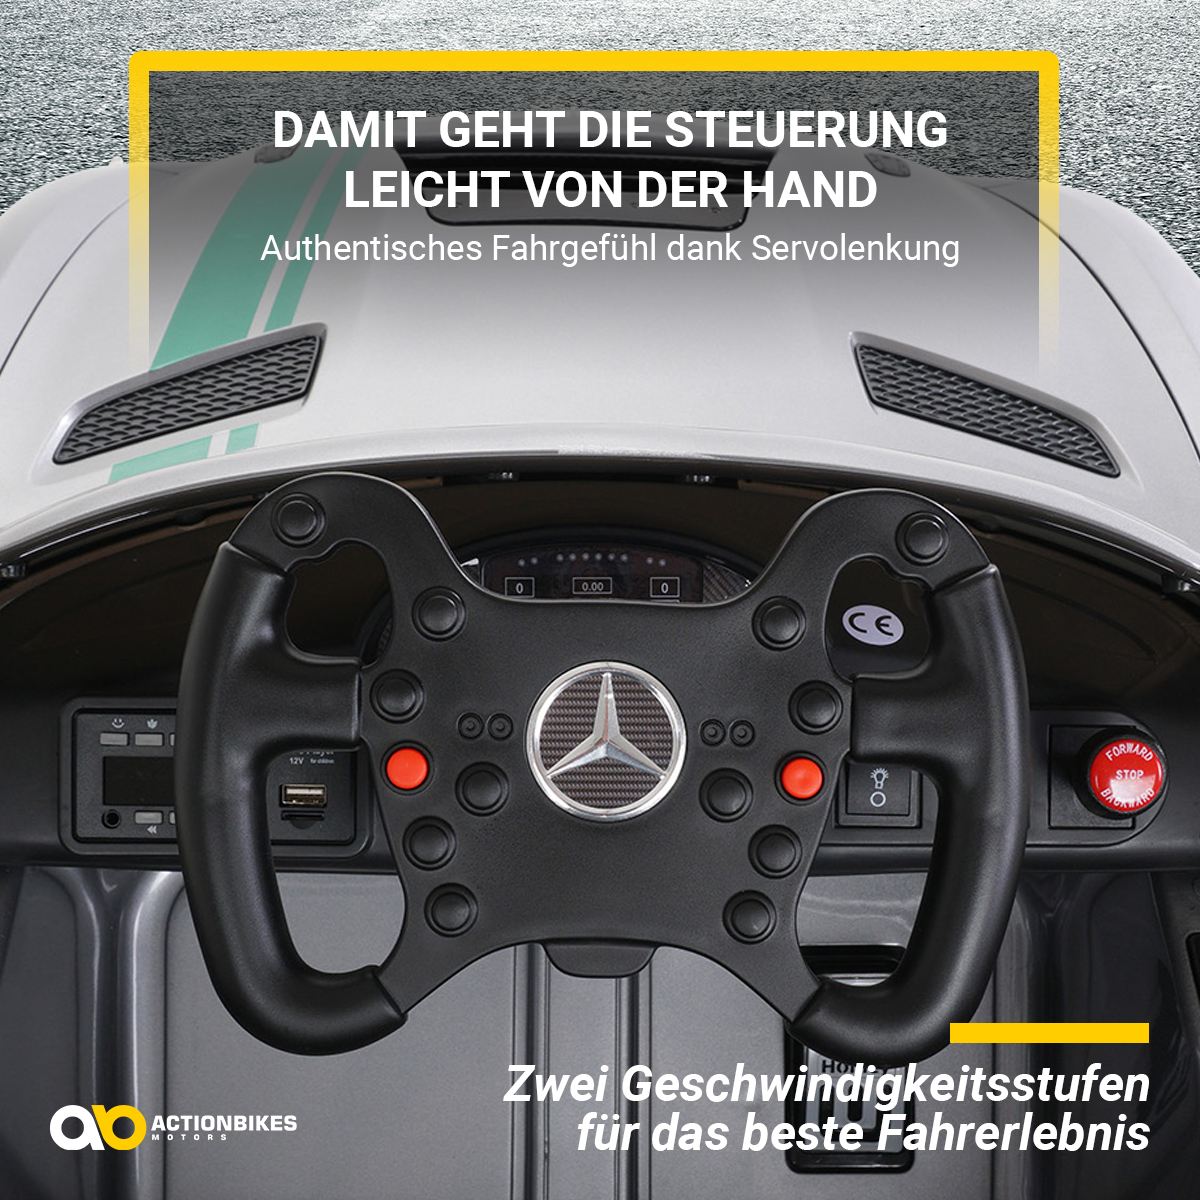 MOTORS GT4 Elektroauto Sport Mercedes Edition AMG ACTIONBIKES